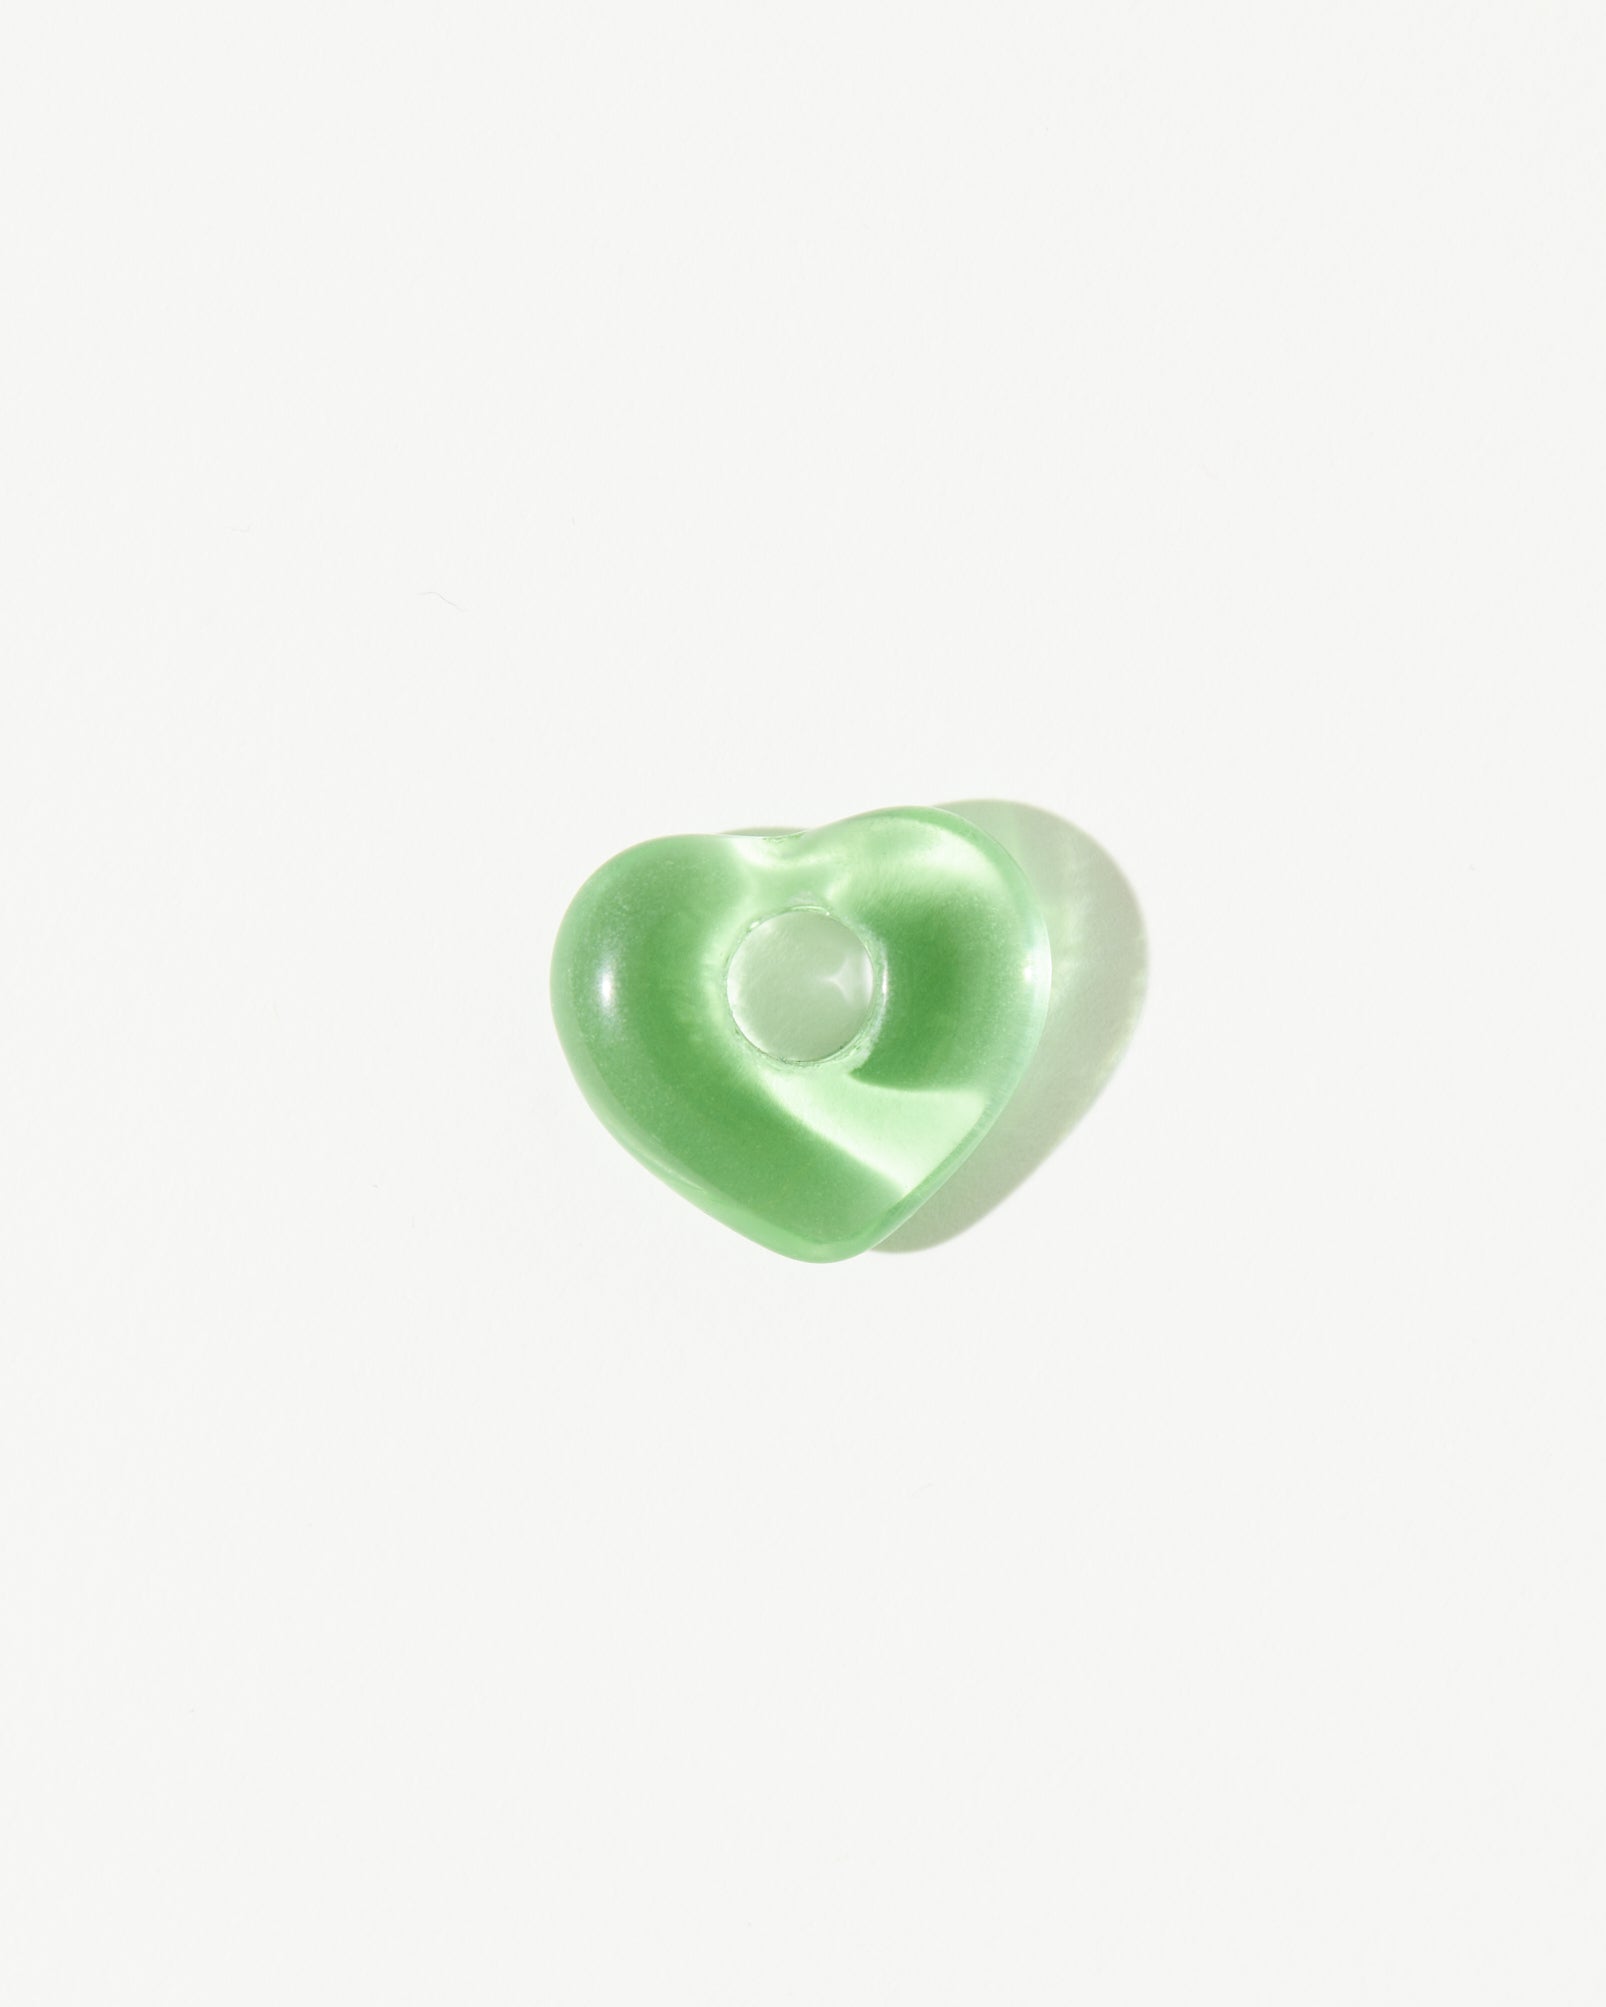 Juicy Wavy Hoop Drops - Mint Heart